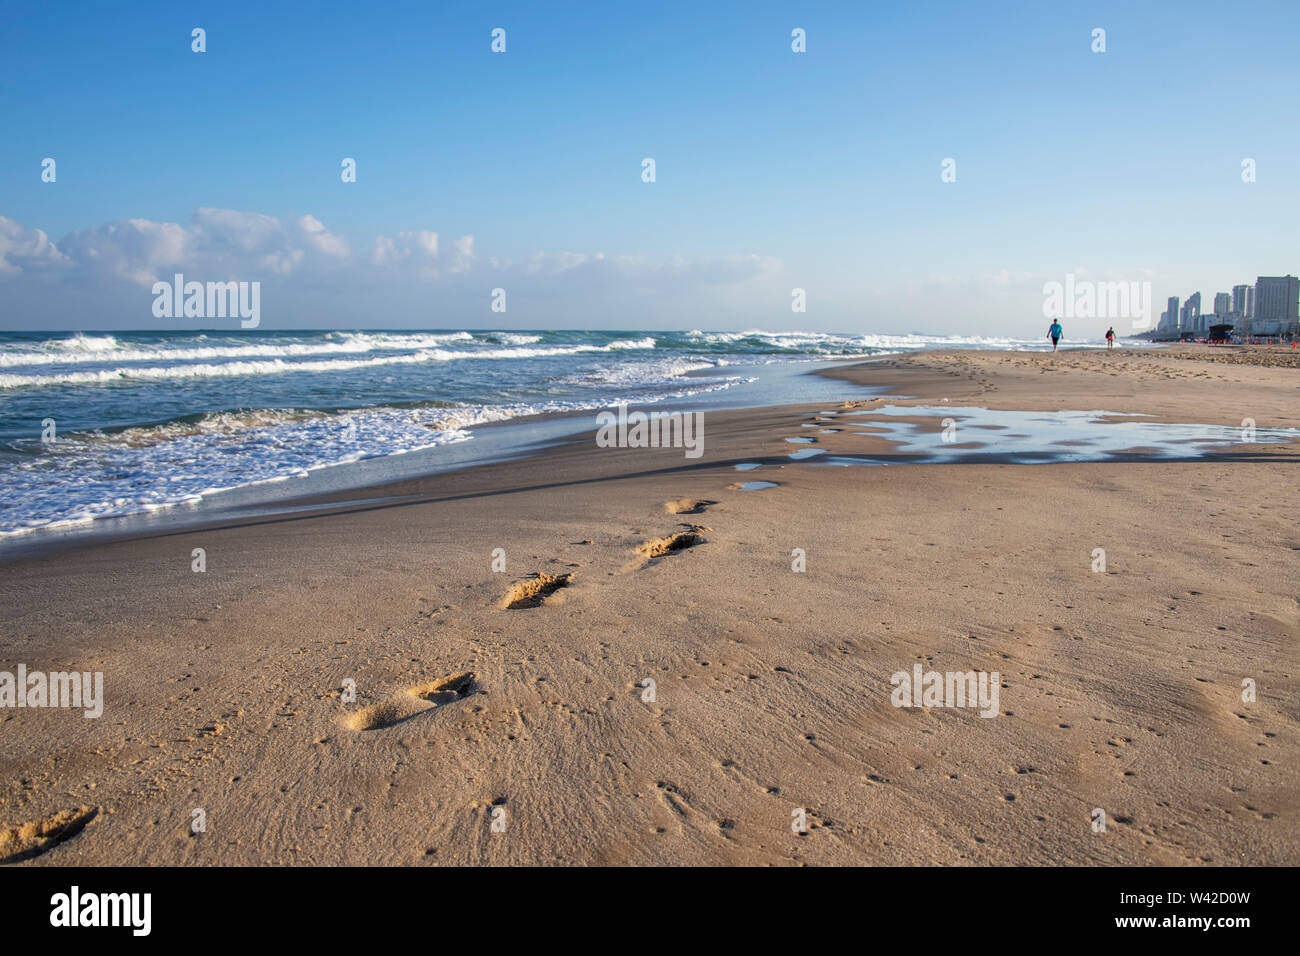 Empreintes de pas sur le sable d'une plage de la Méditerranée. Les vagues écumeuses et bâtiments à l'horizon. Israël Banque D'Images